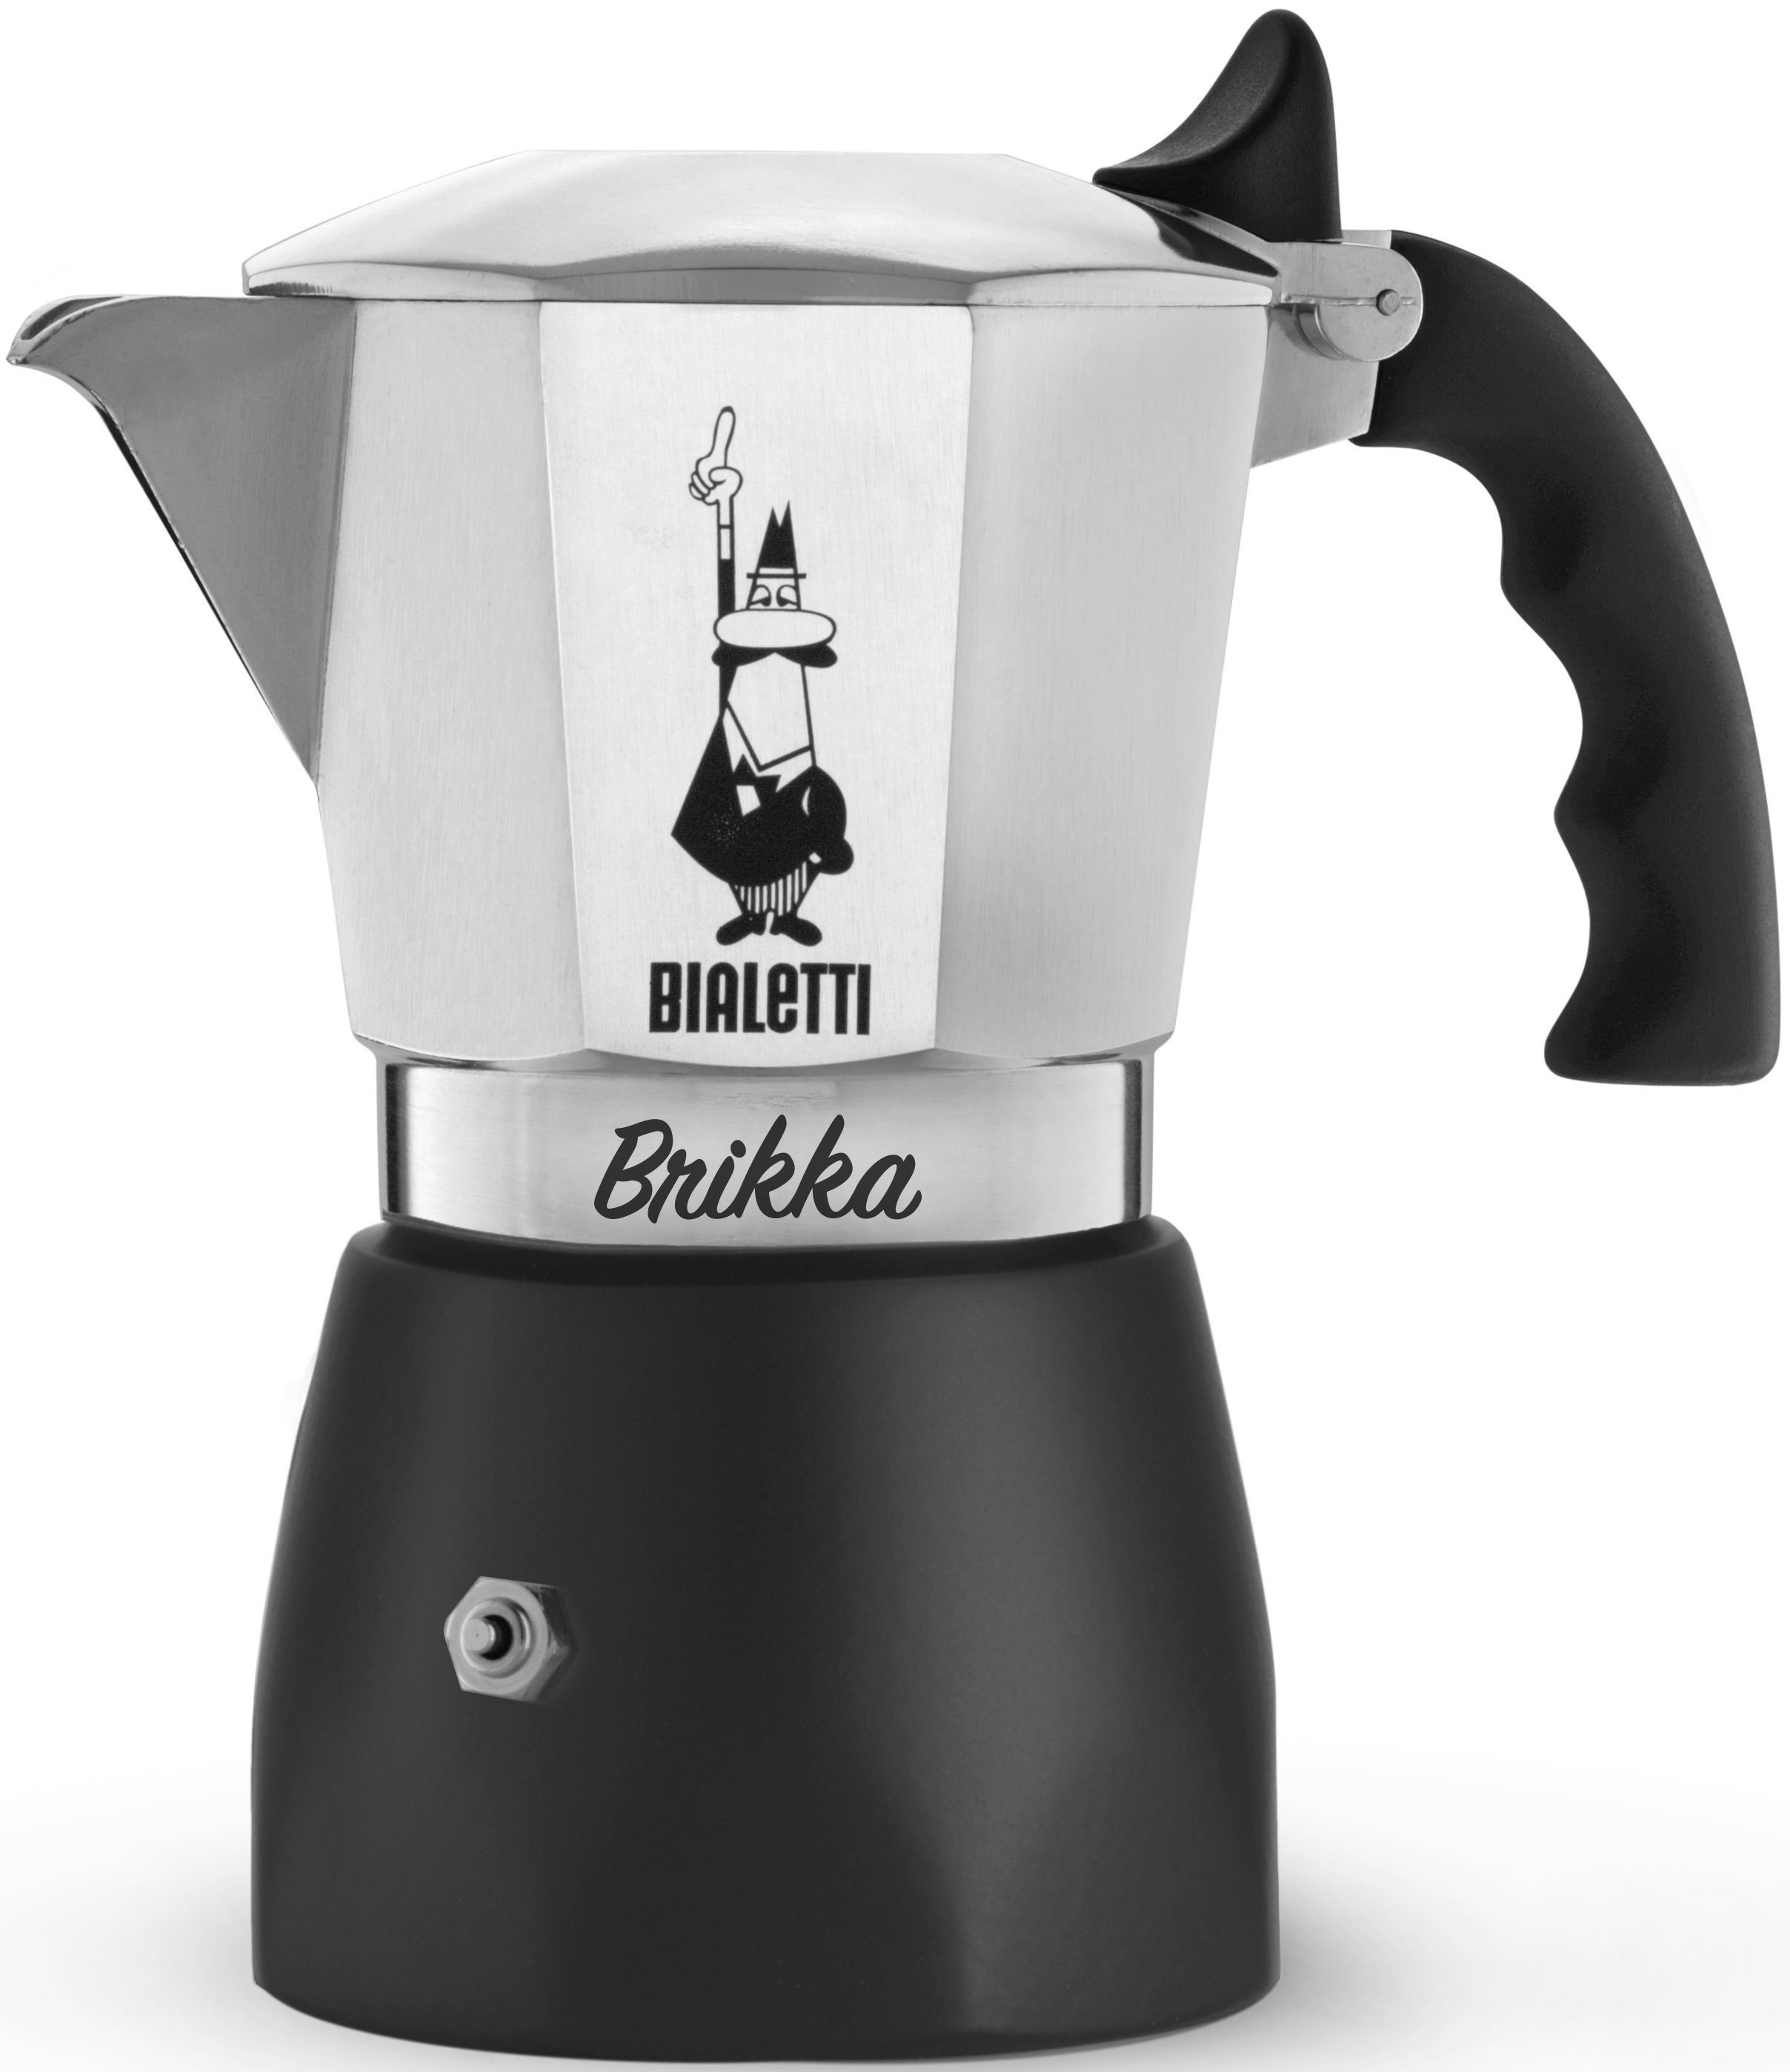 BIALETTI Espressokocher New Brikka 4 Tassen, 0,15l Kaffeekanne, aus  Aluminium, für vier Tassen, Kaffeemaschine, Kaffeekocher, für Gas-,  Elektro- und Propan-Kochfelder geeignet, für Camping, Silber / Schwarz